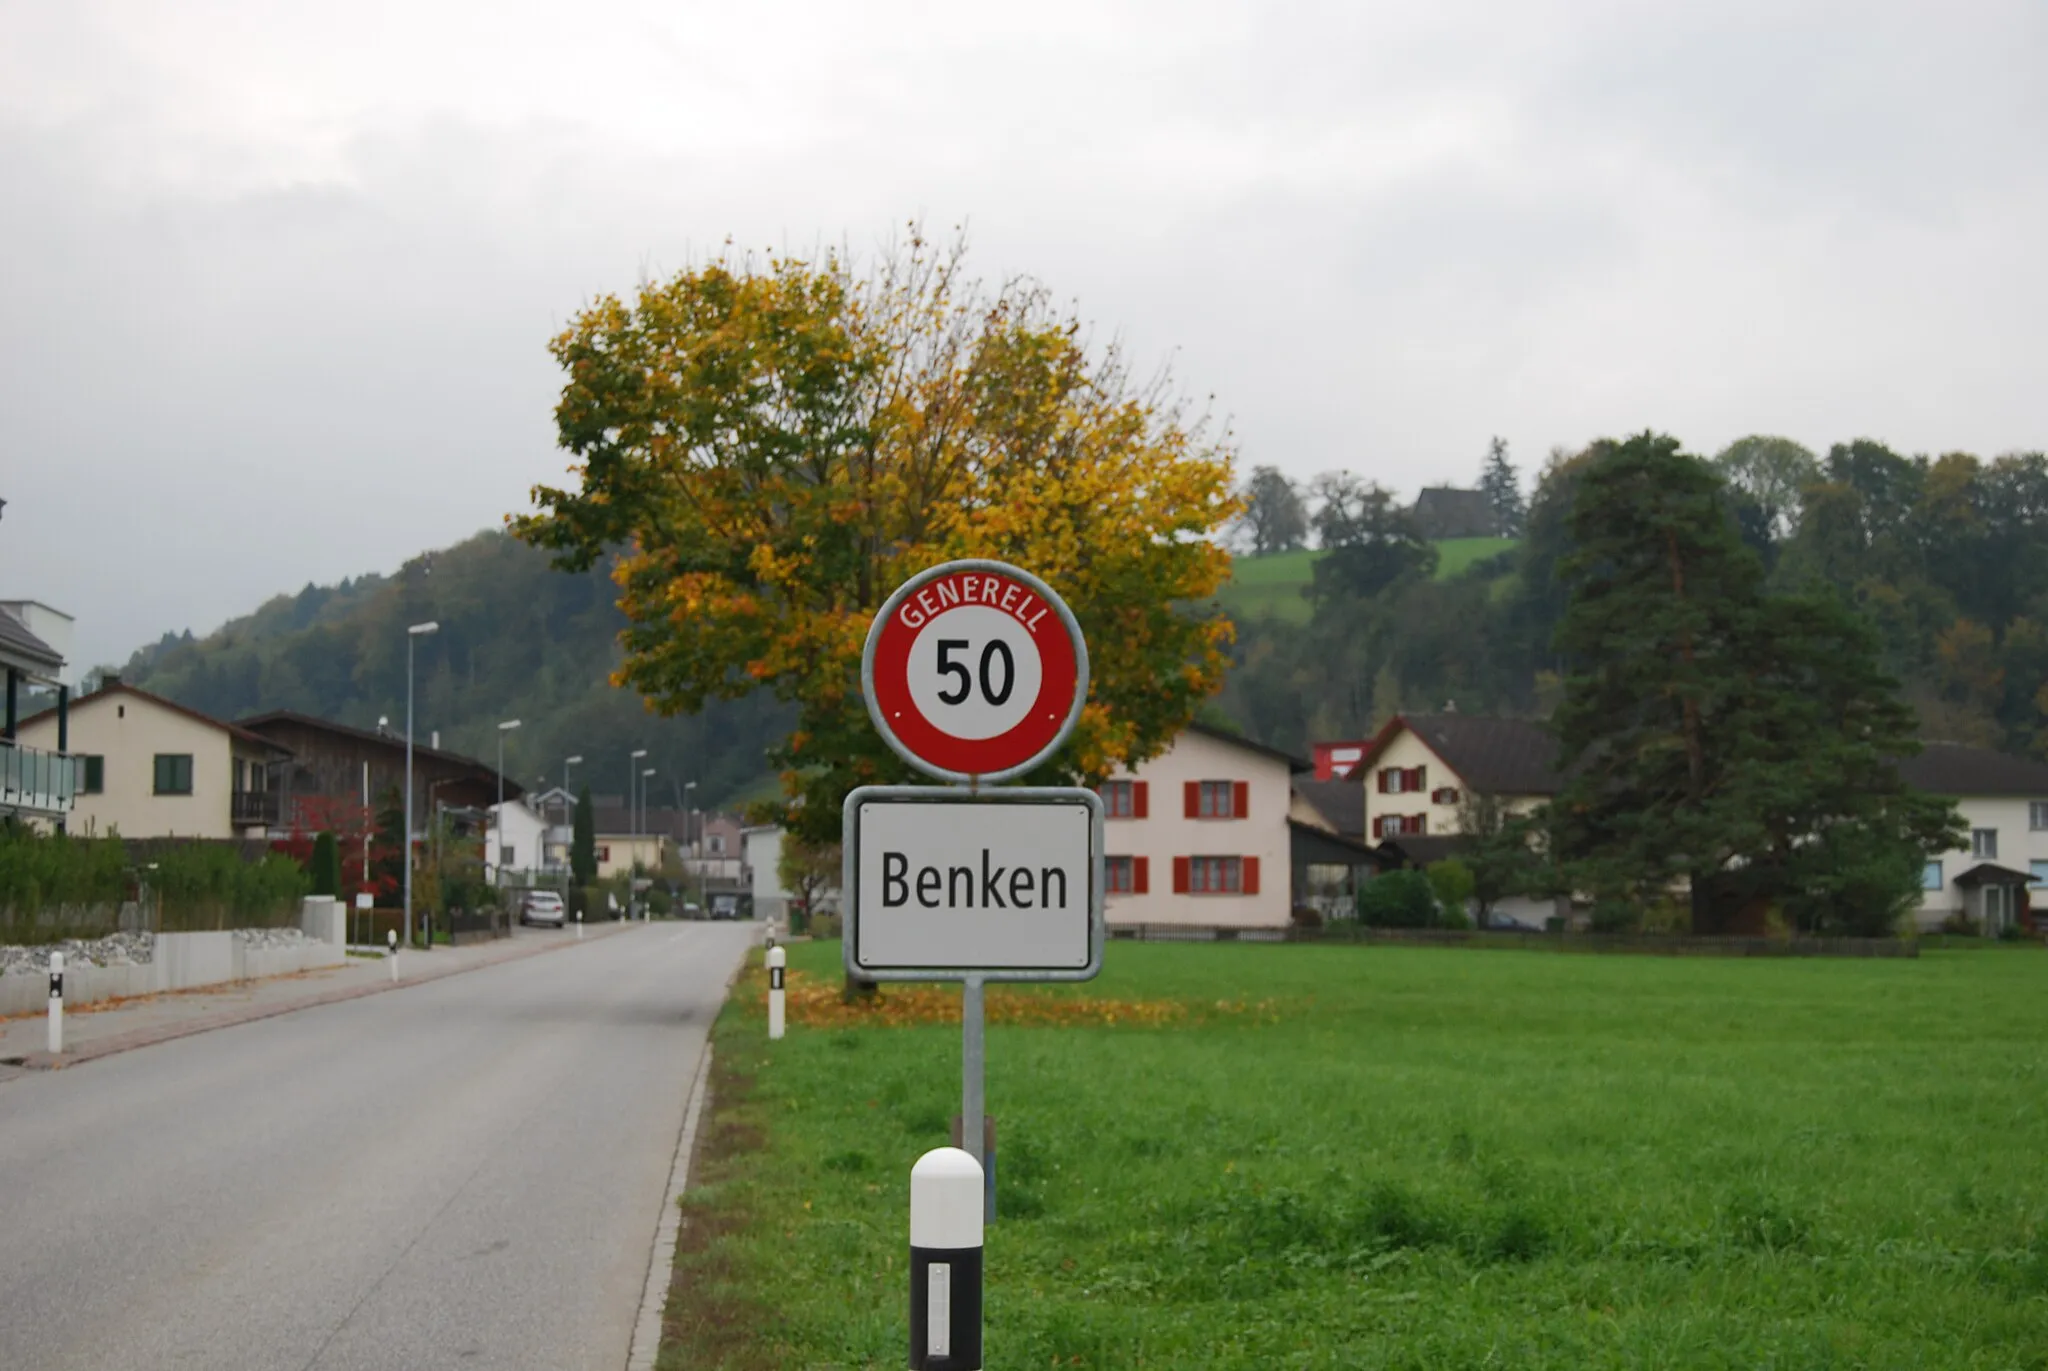 Photo showing: Benken, canton of St. Gallen, Switzerland